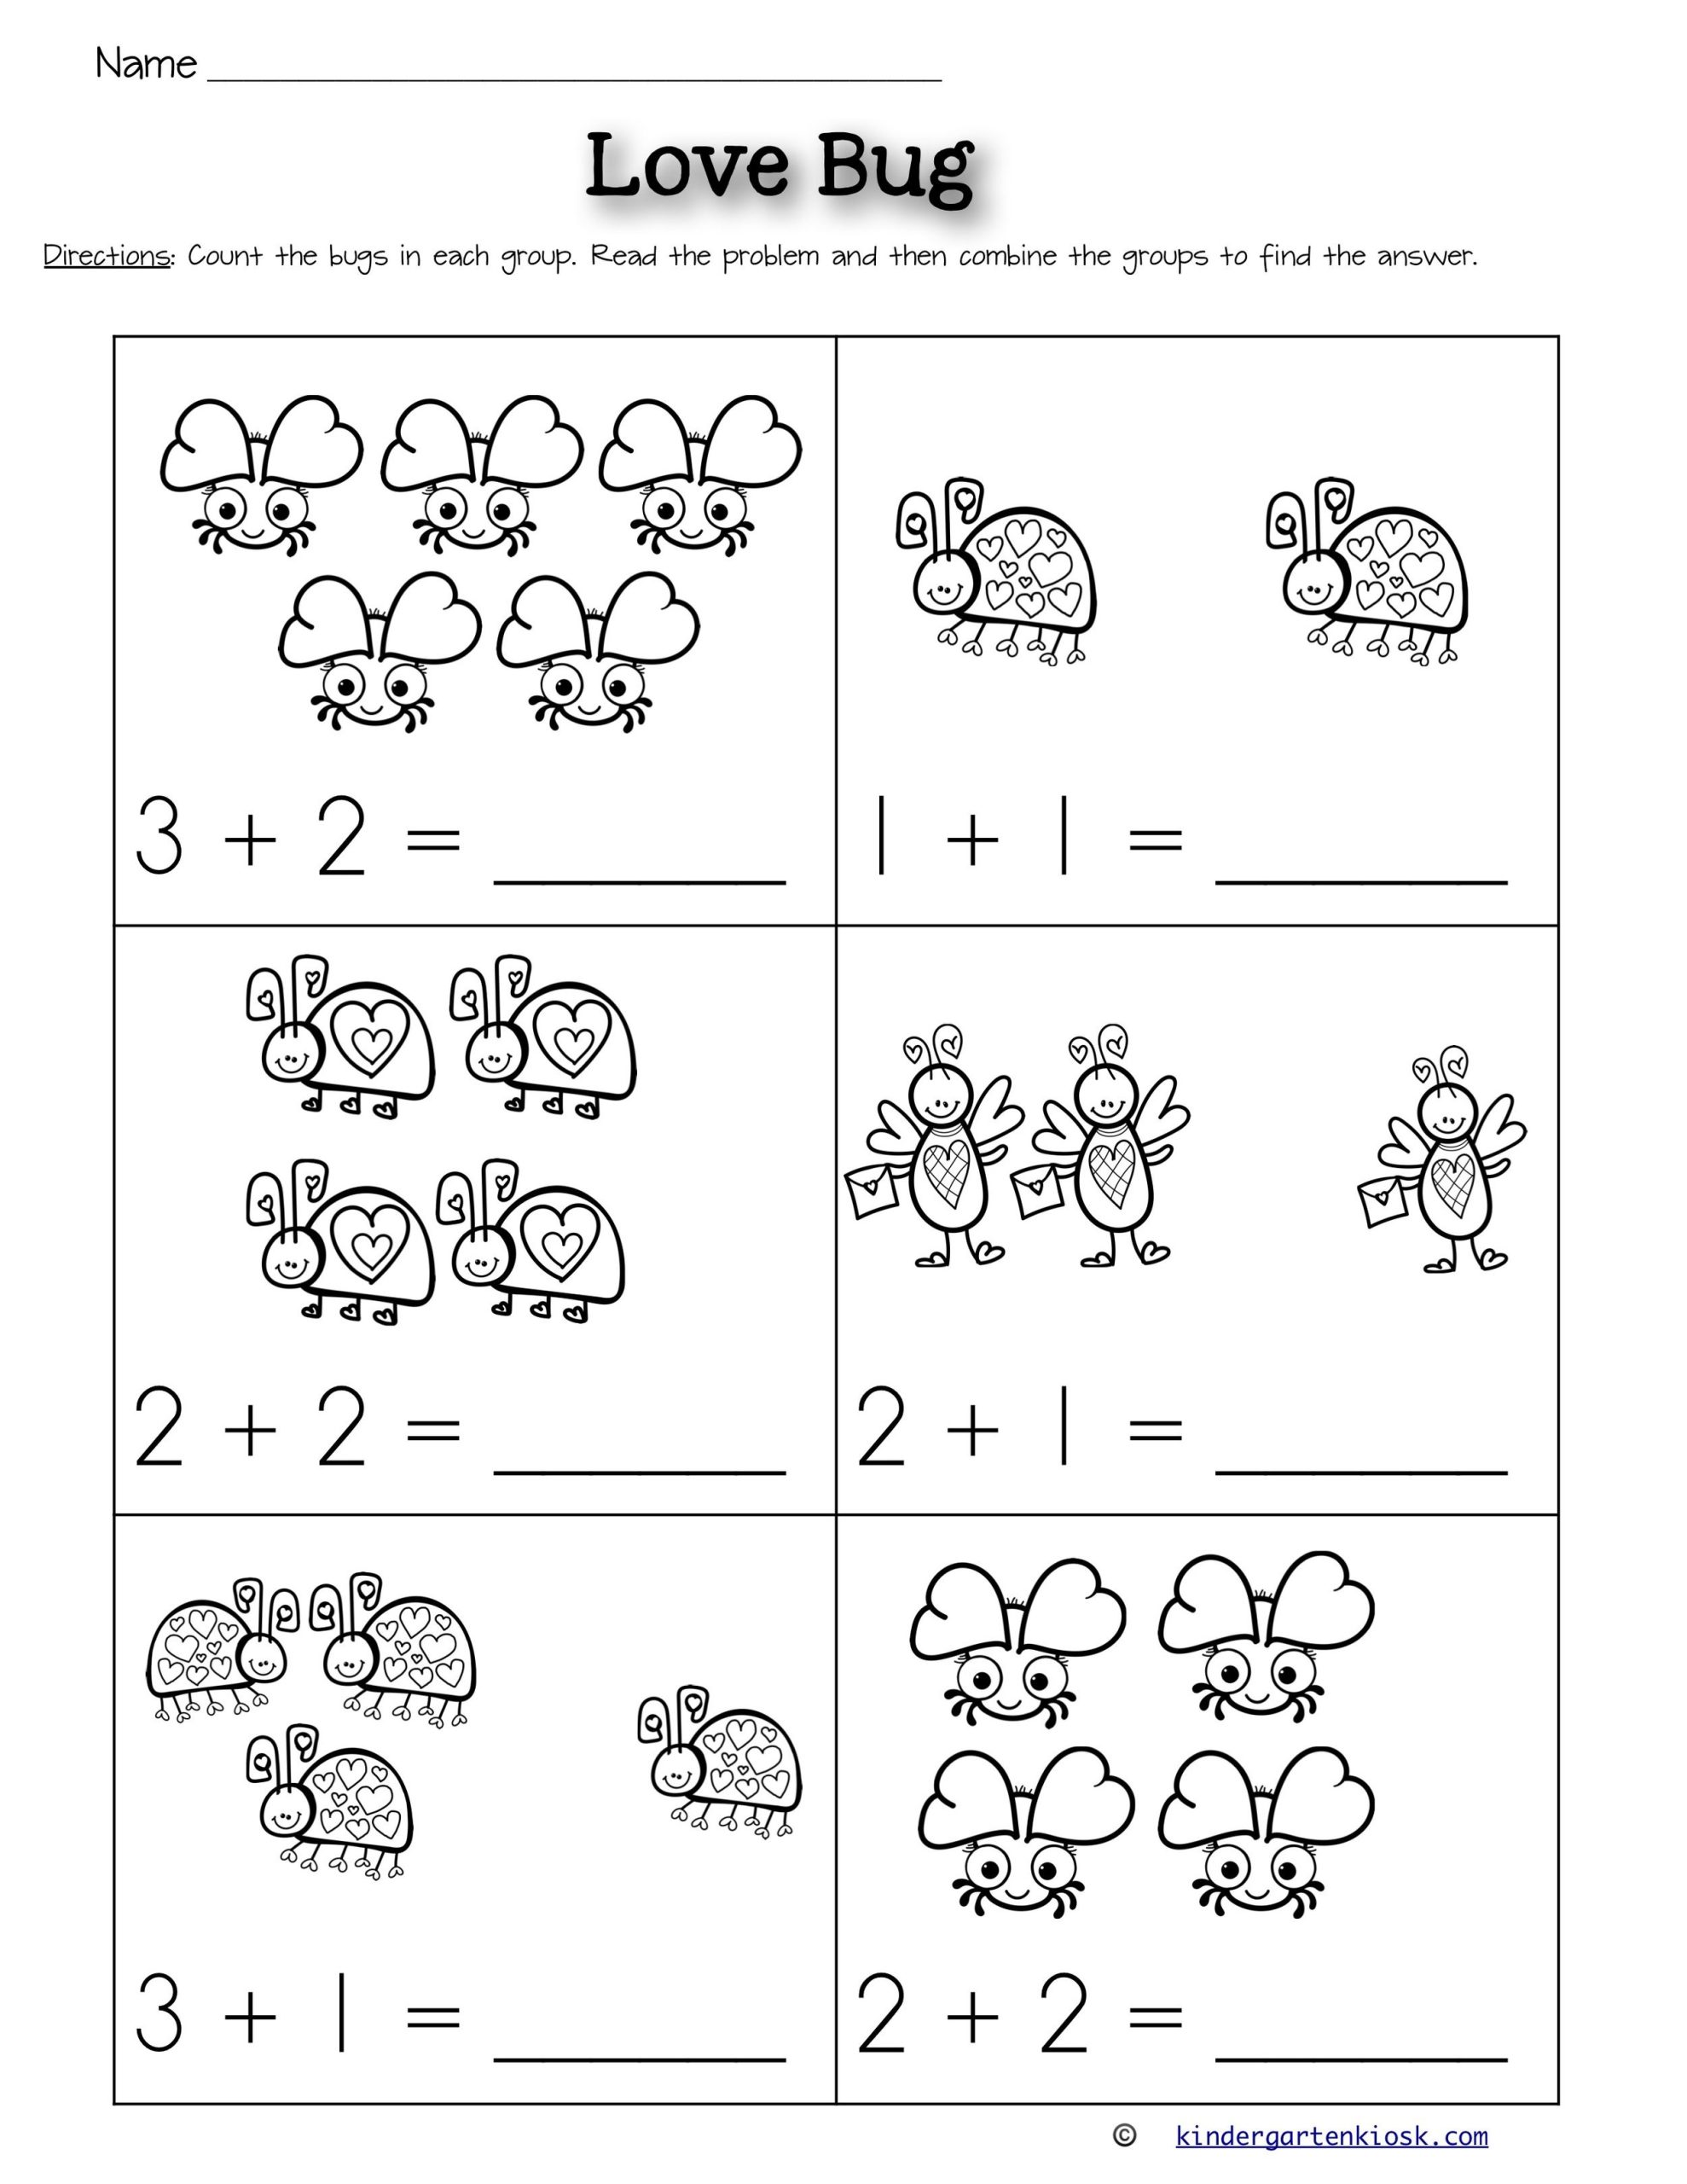 Addition Worksheets For Kindergarten